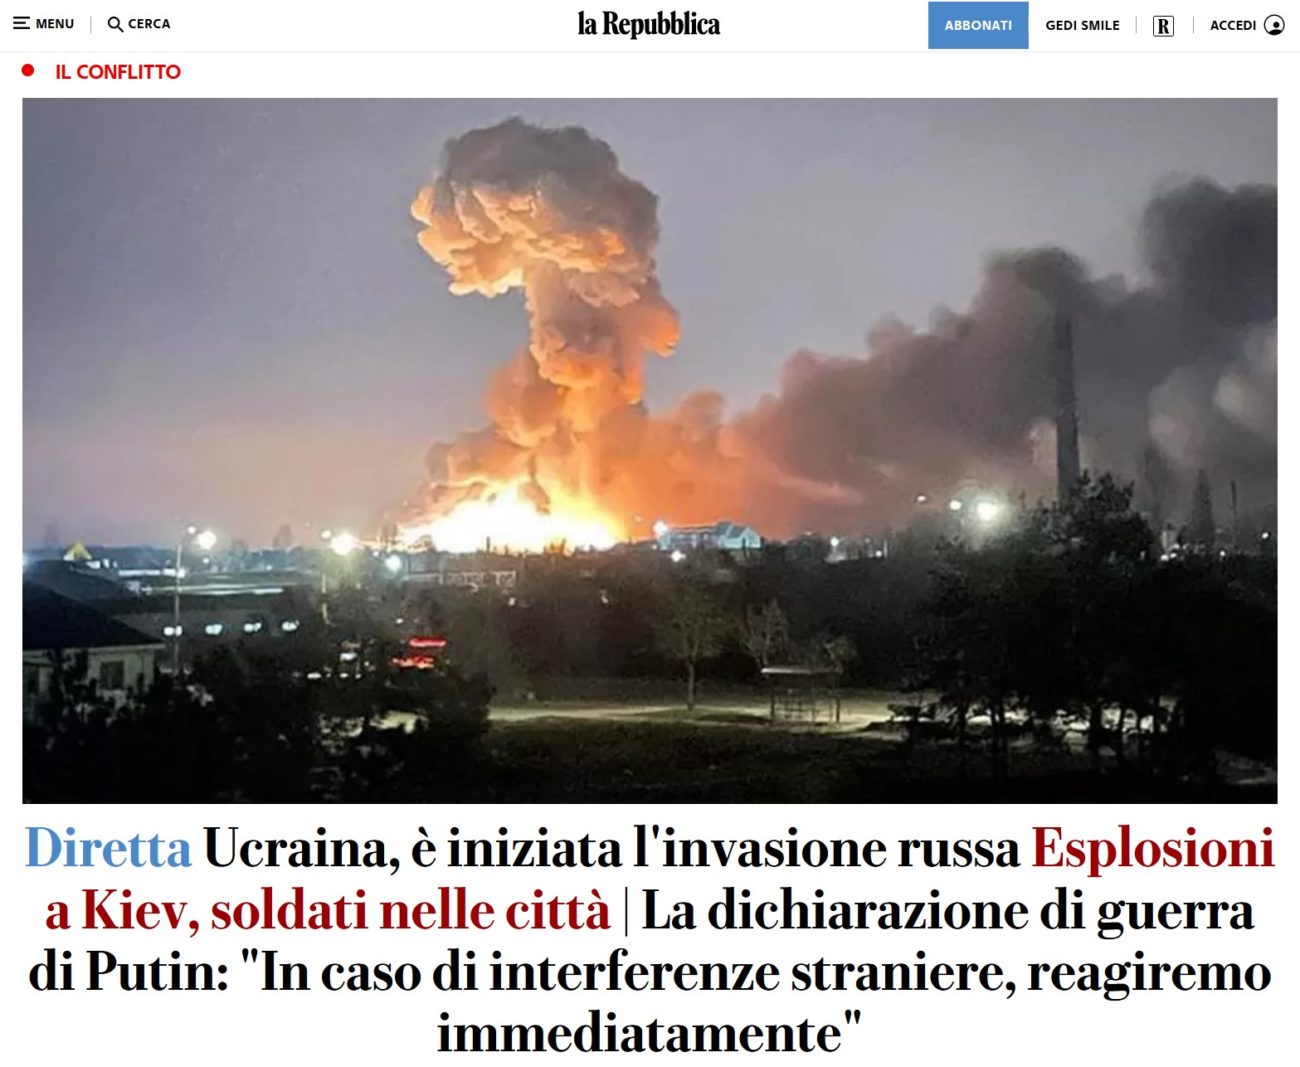 La guerra in Ucraina raccontata sulla homepage di Repubblica.it